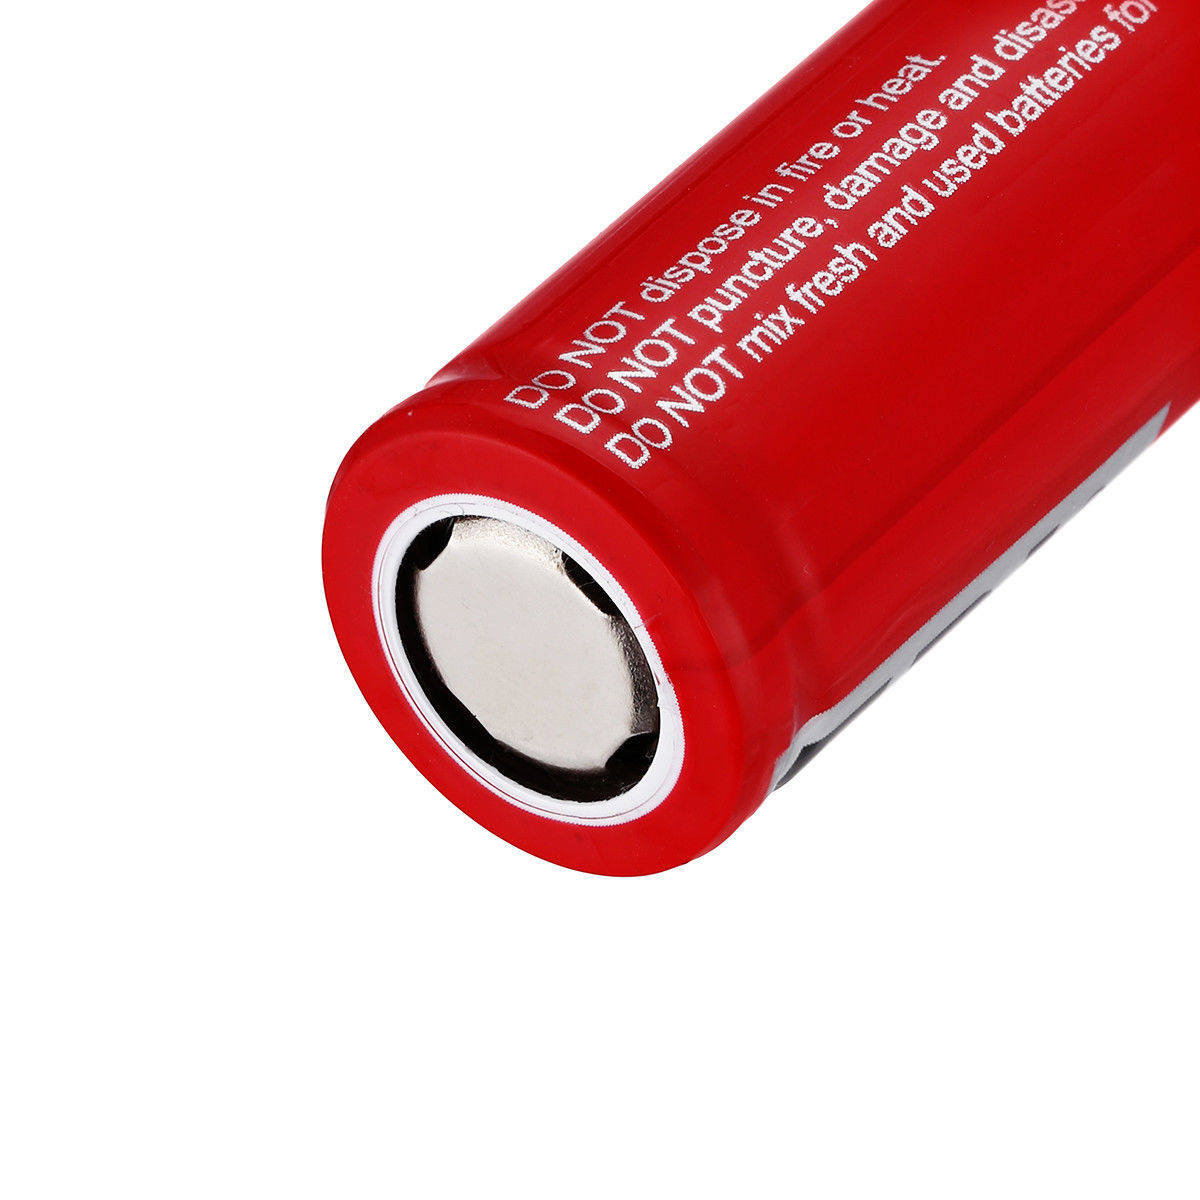 EBL 18500 Li-ion Battery 1600 mAh, 3.7V 2pcs/set